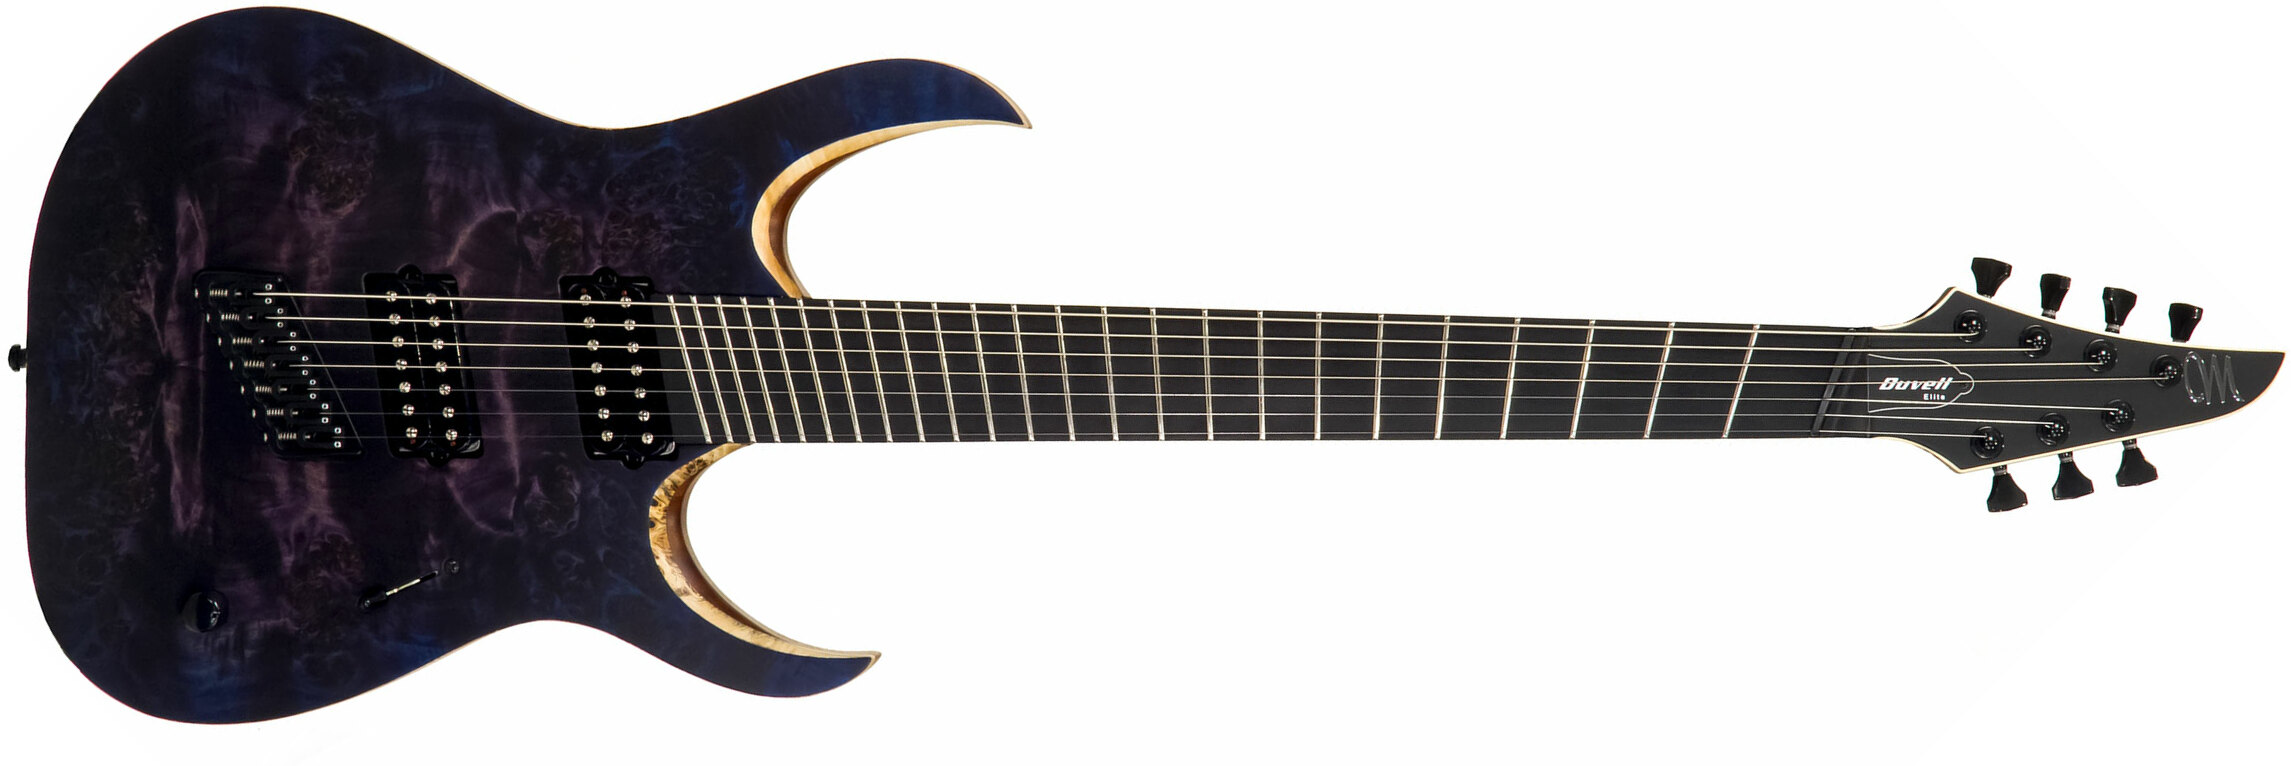 Mayones Guitars Duvell Elite V-frets 7c Multiscale 2h Bare Knuckle Ht Eb - Dirty Purple Blue Burst - Guitare Électrique Multi-scale - Main picture